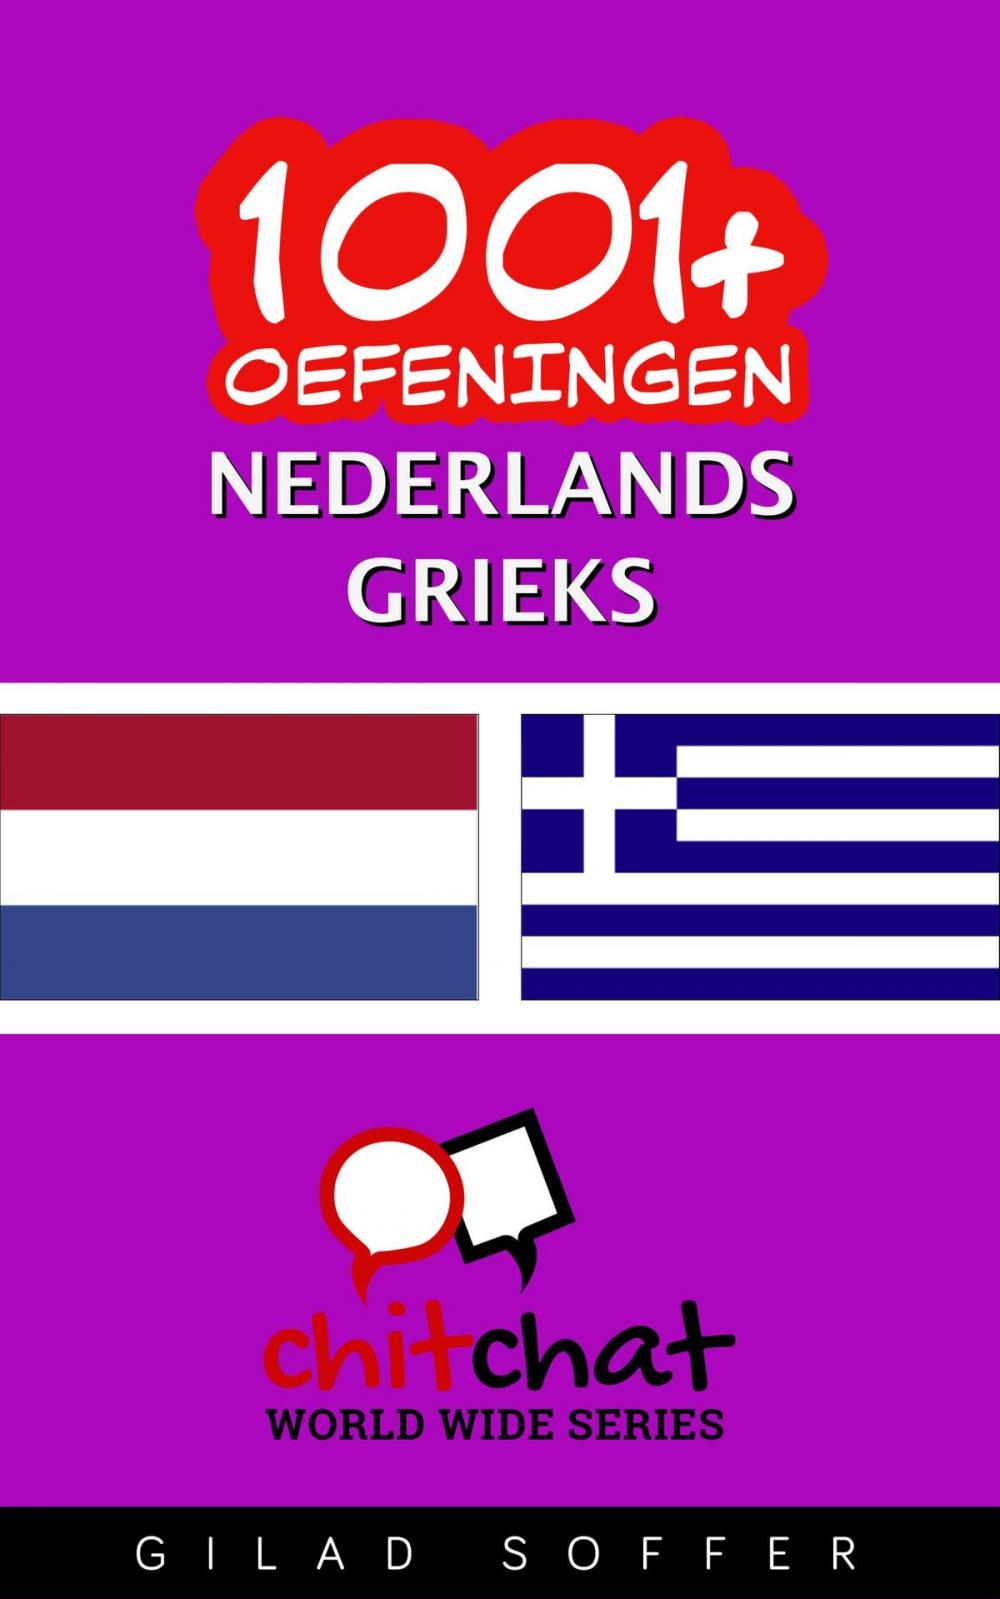 Big bigCover of 1001+ oefeningen nederlands - Grieks